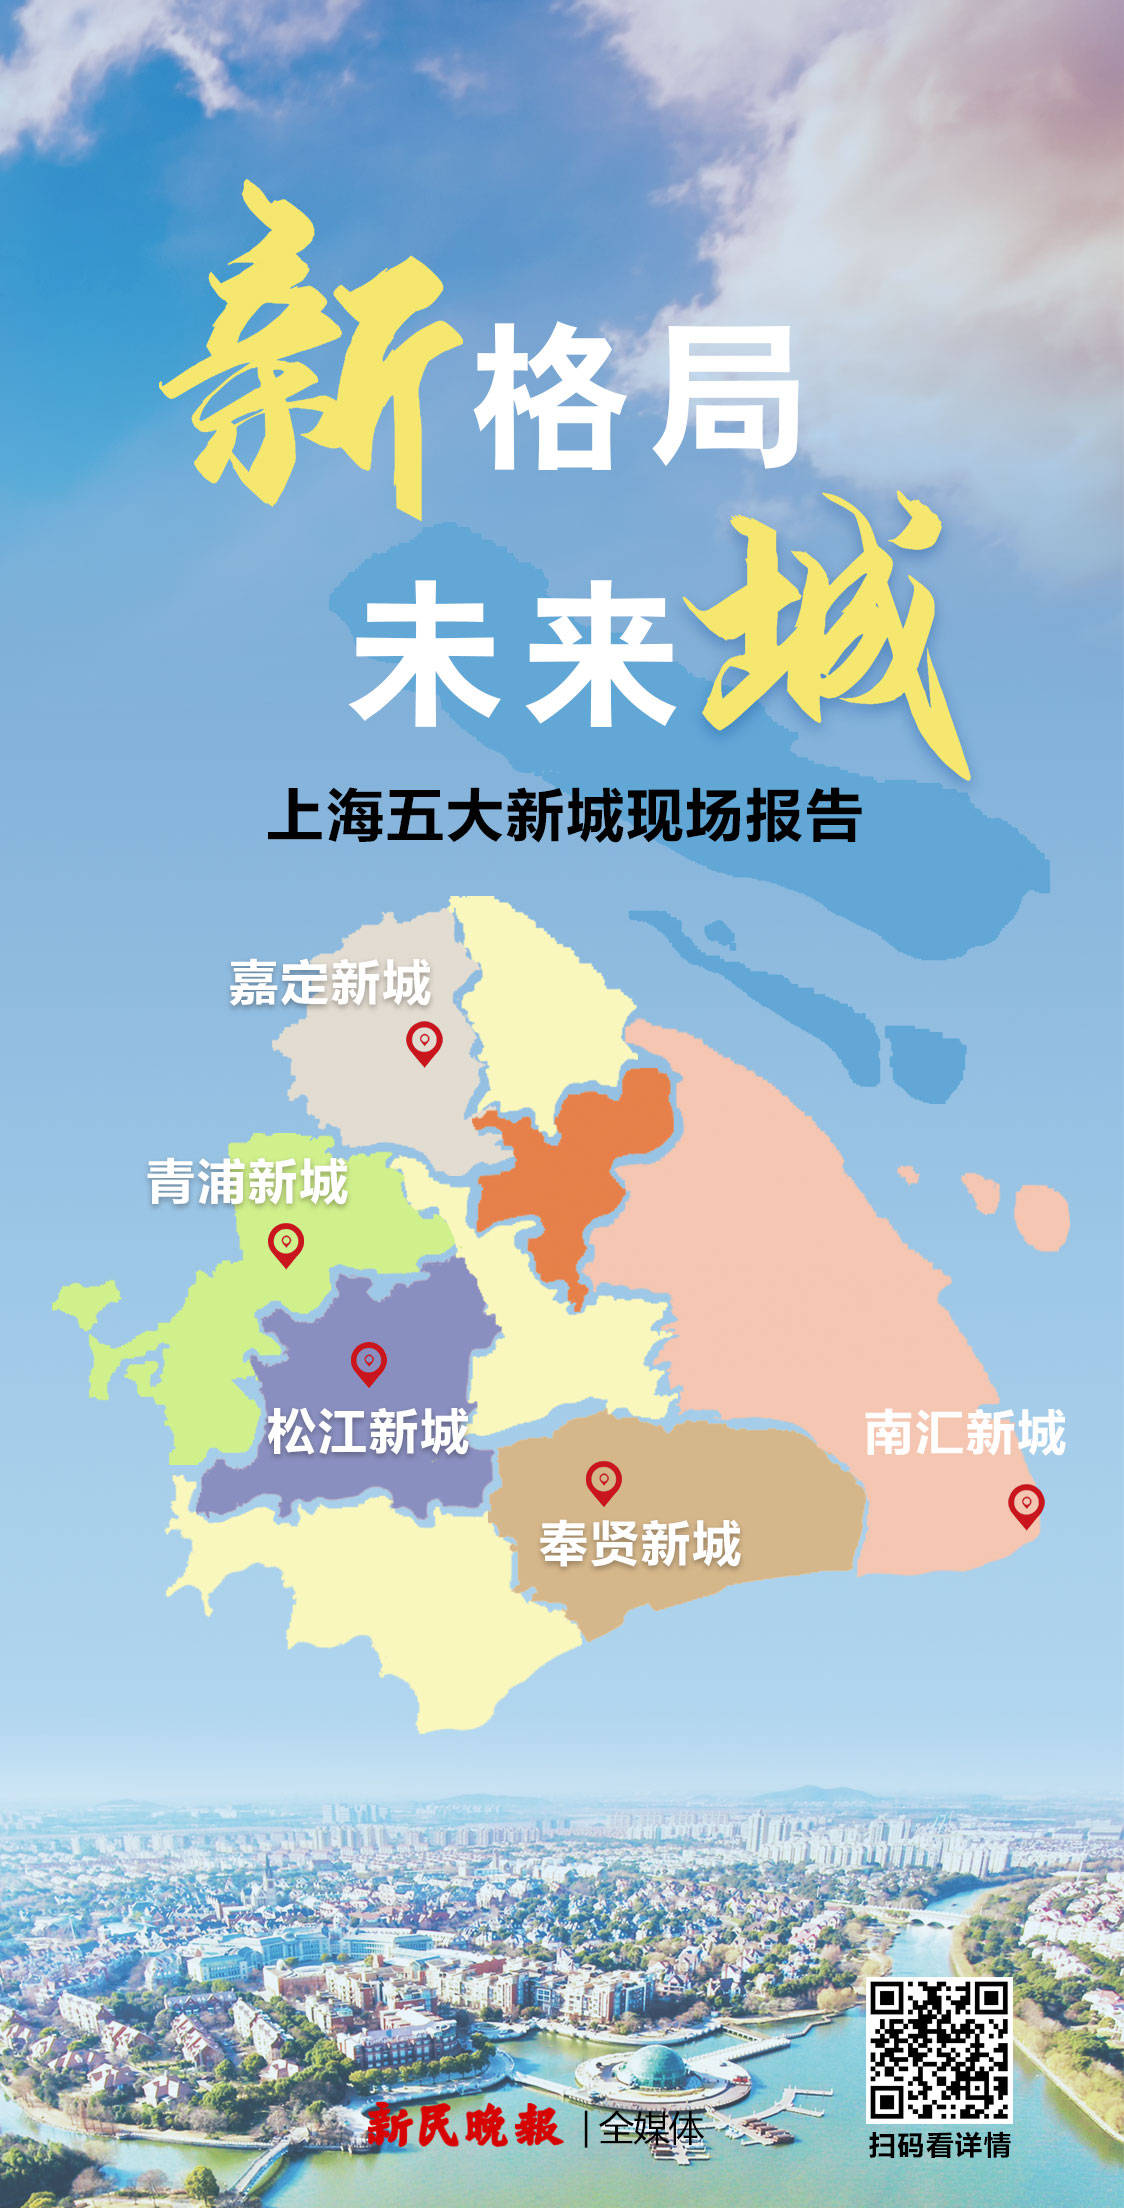 新格局未来城首份上海五大新城现场报告请查收